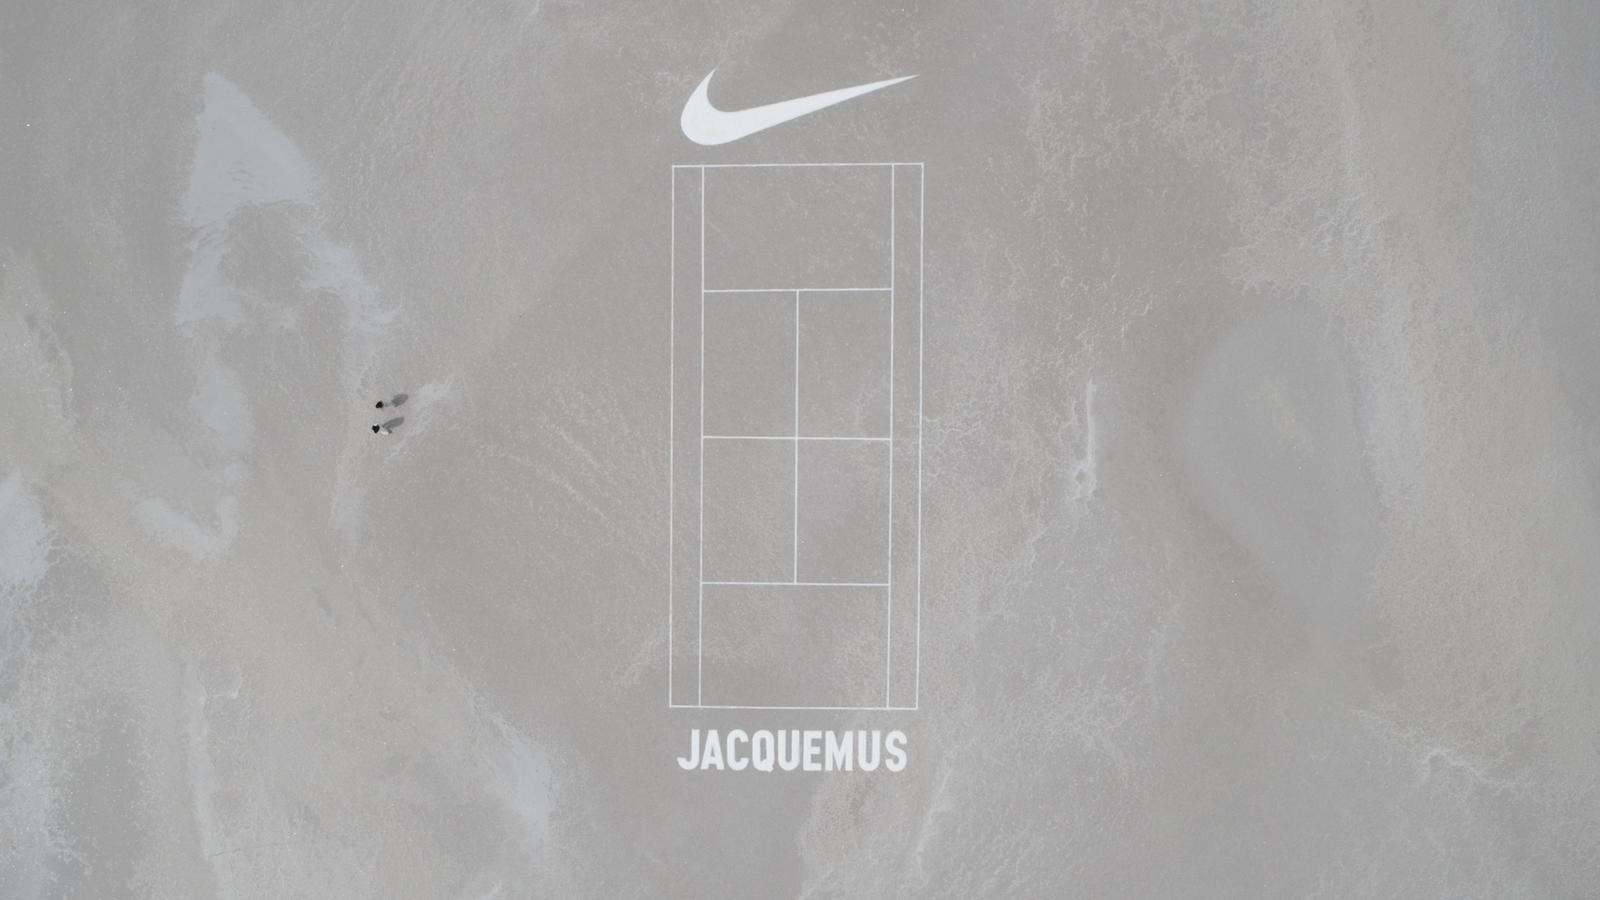 Nike e Jacquemus revelam colaboração (Foto: Divulgação)